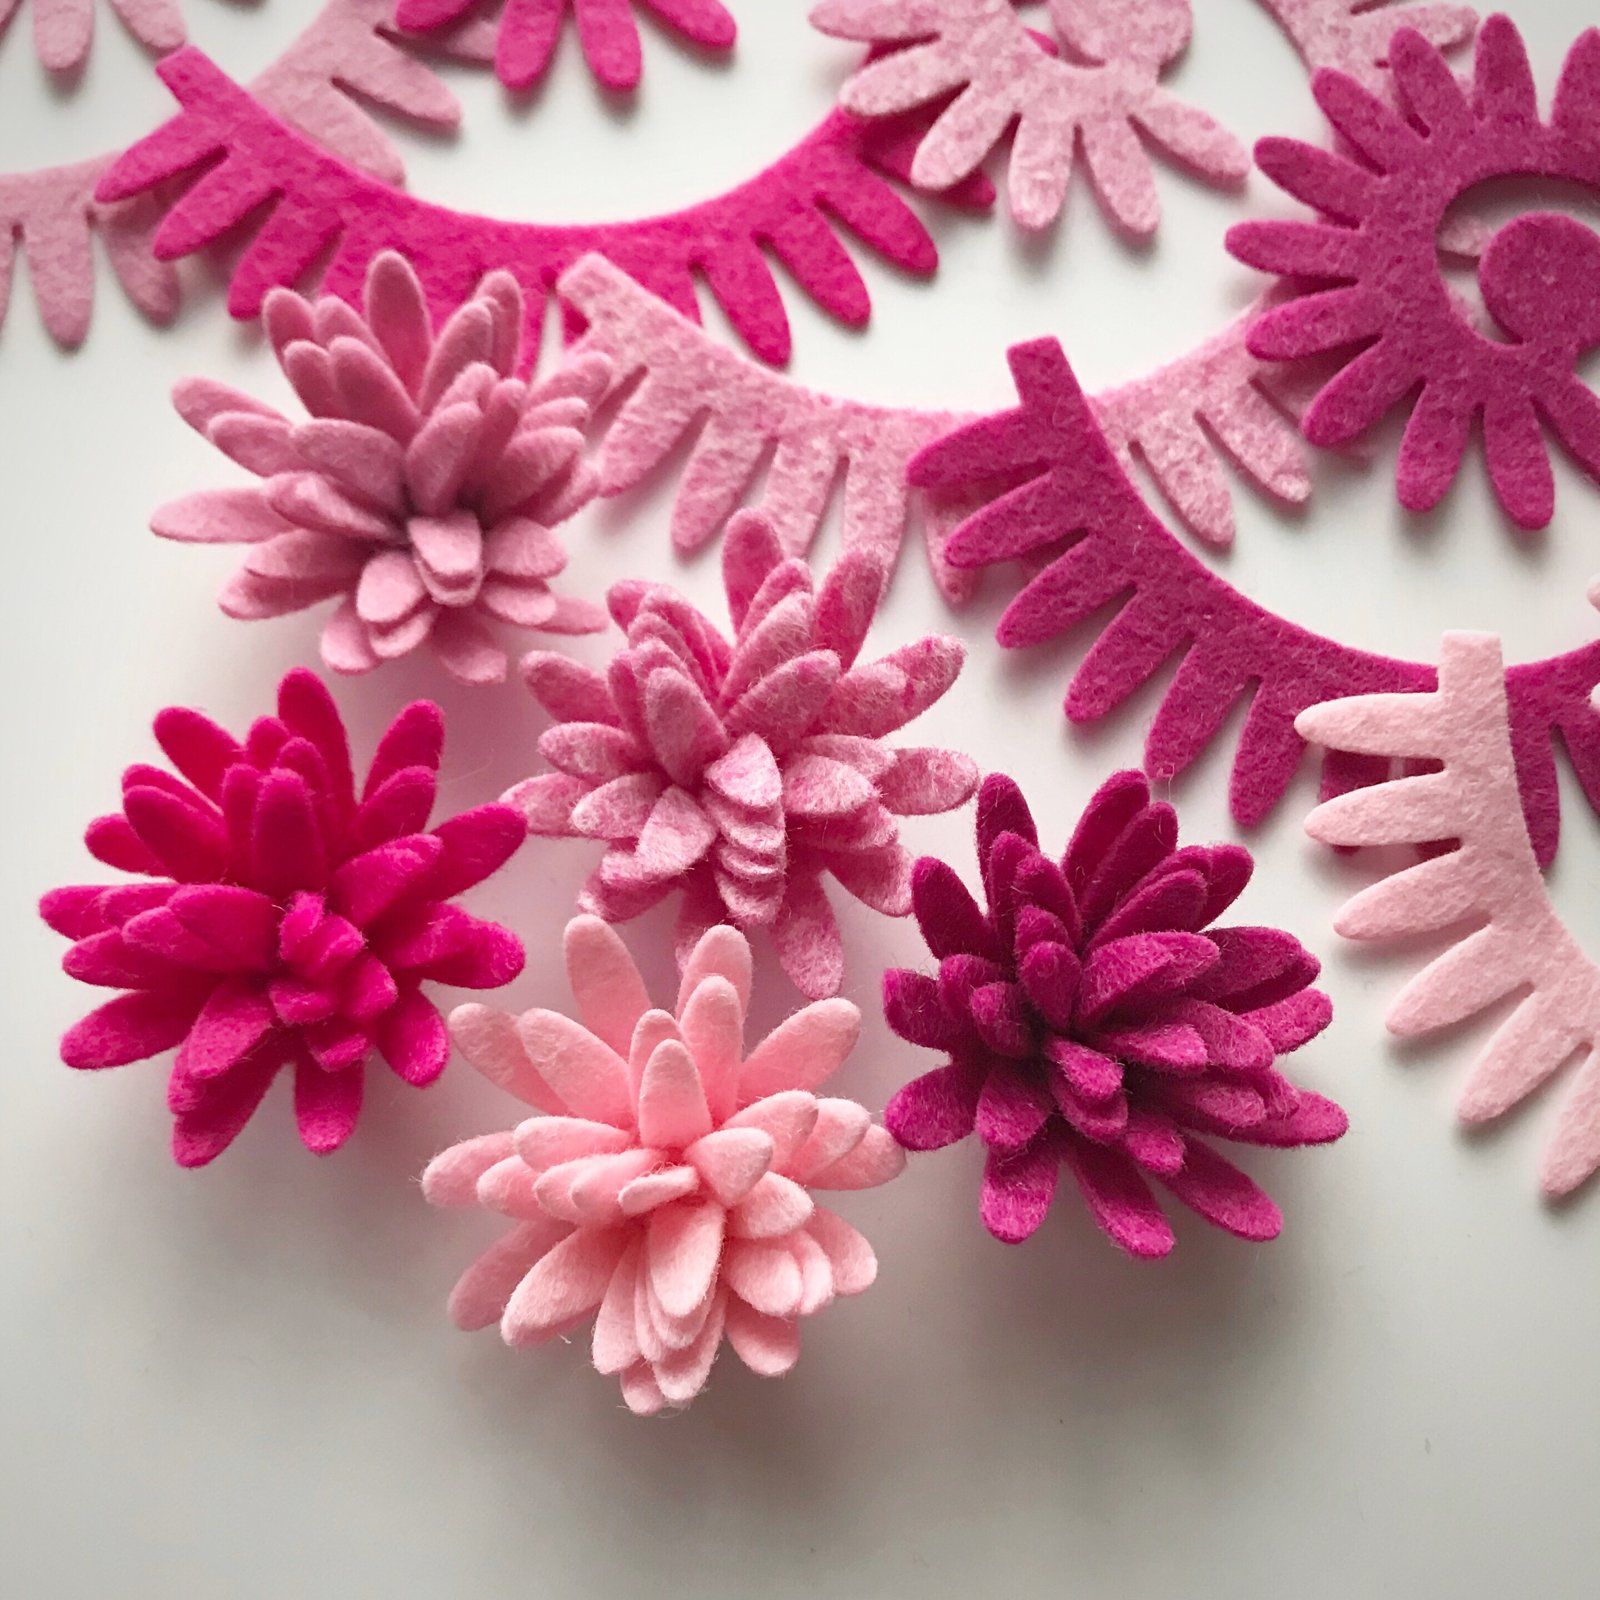 Цветочки своими руками из фетра: 10 идей для вдохновения. Использование цветов из фетра